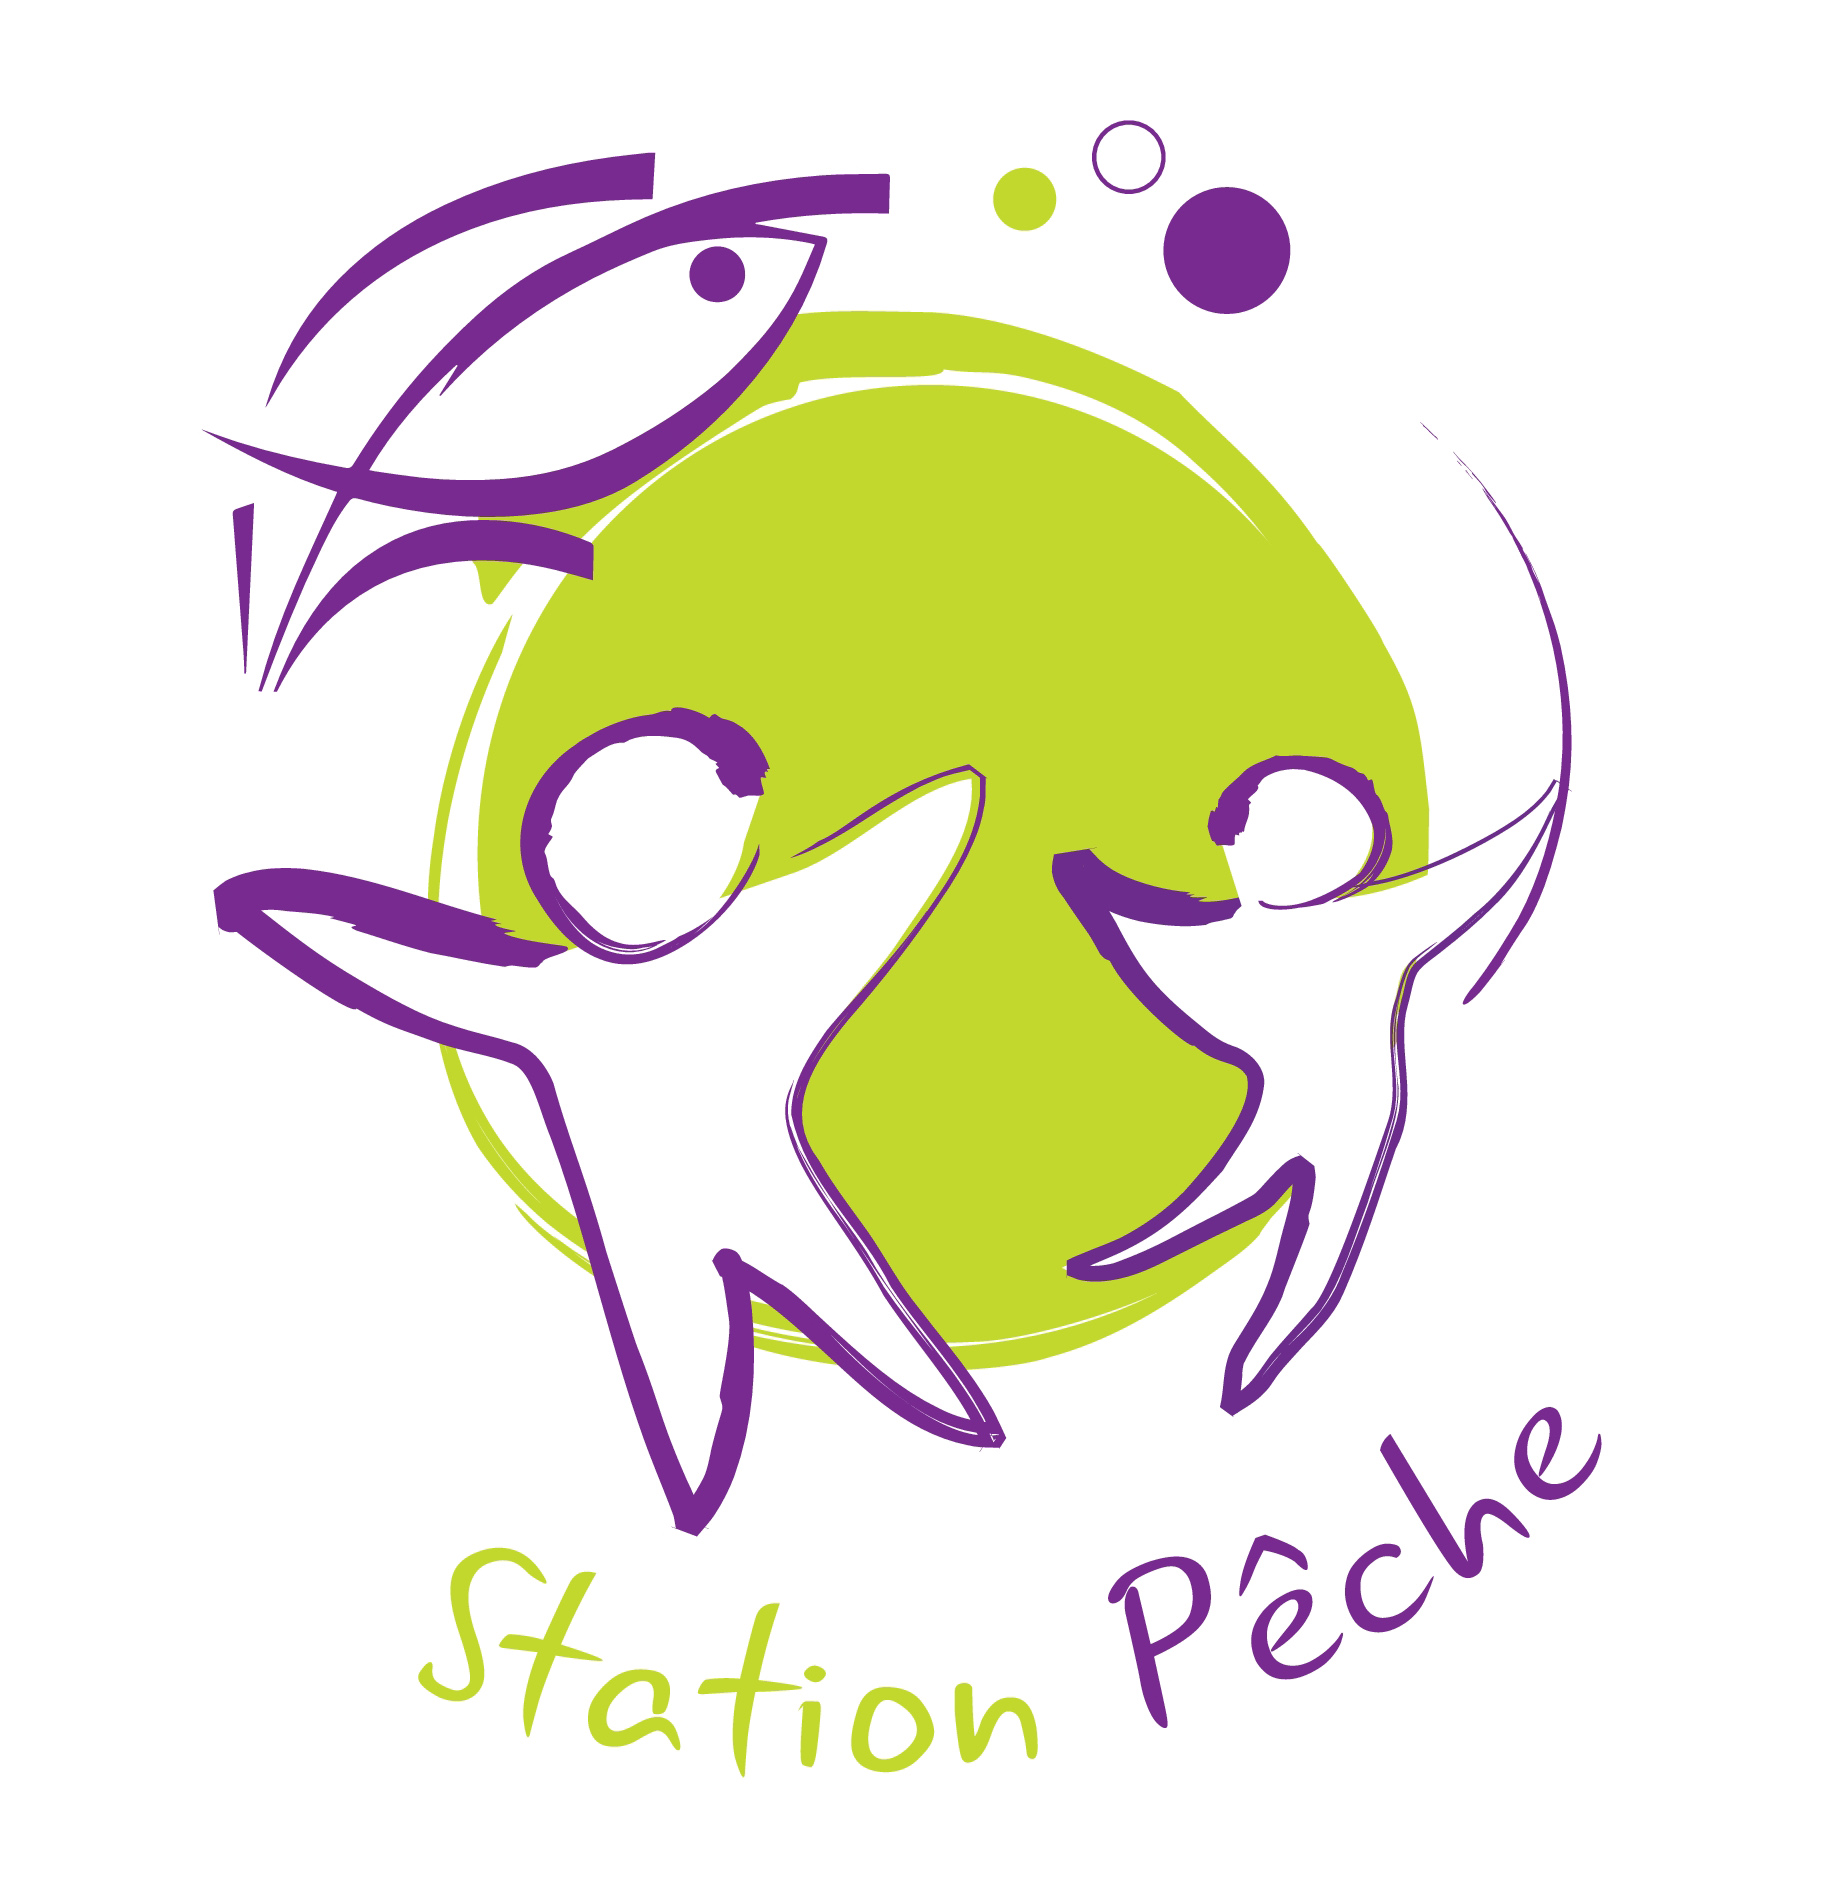 logo-station-peche _1_.jpg